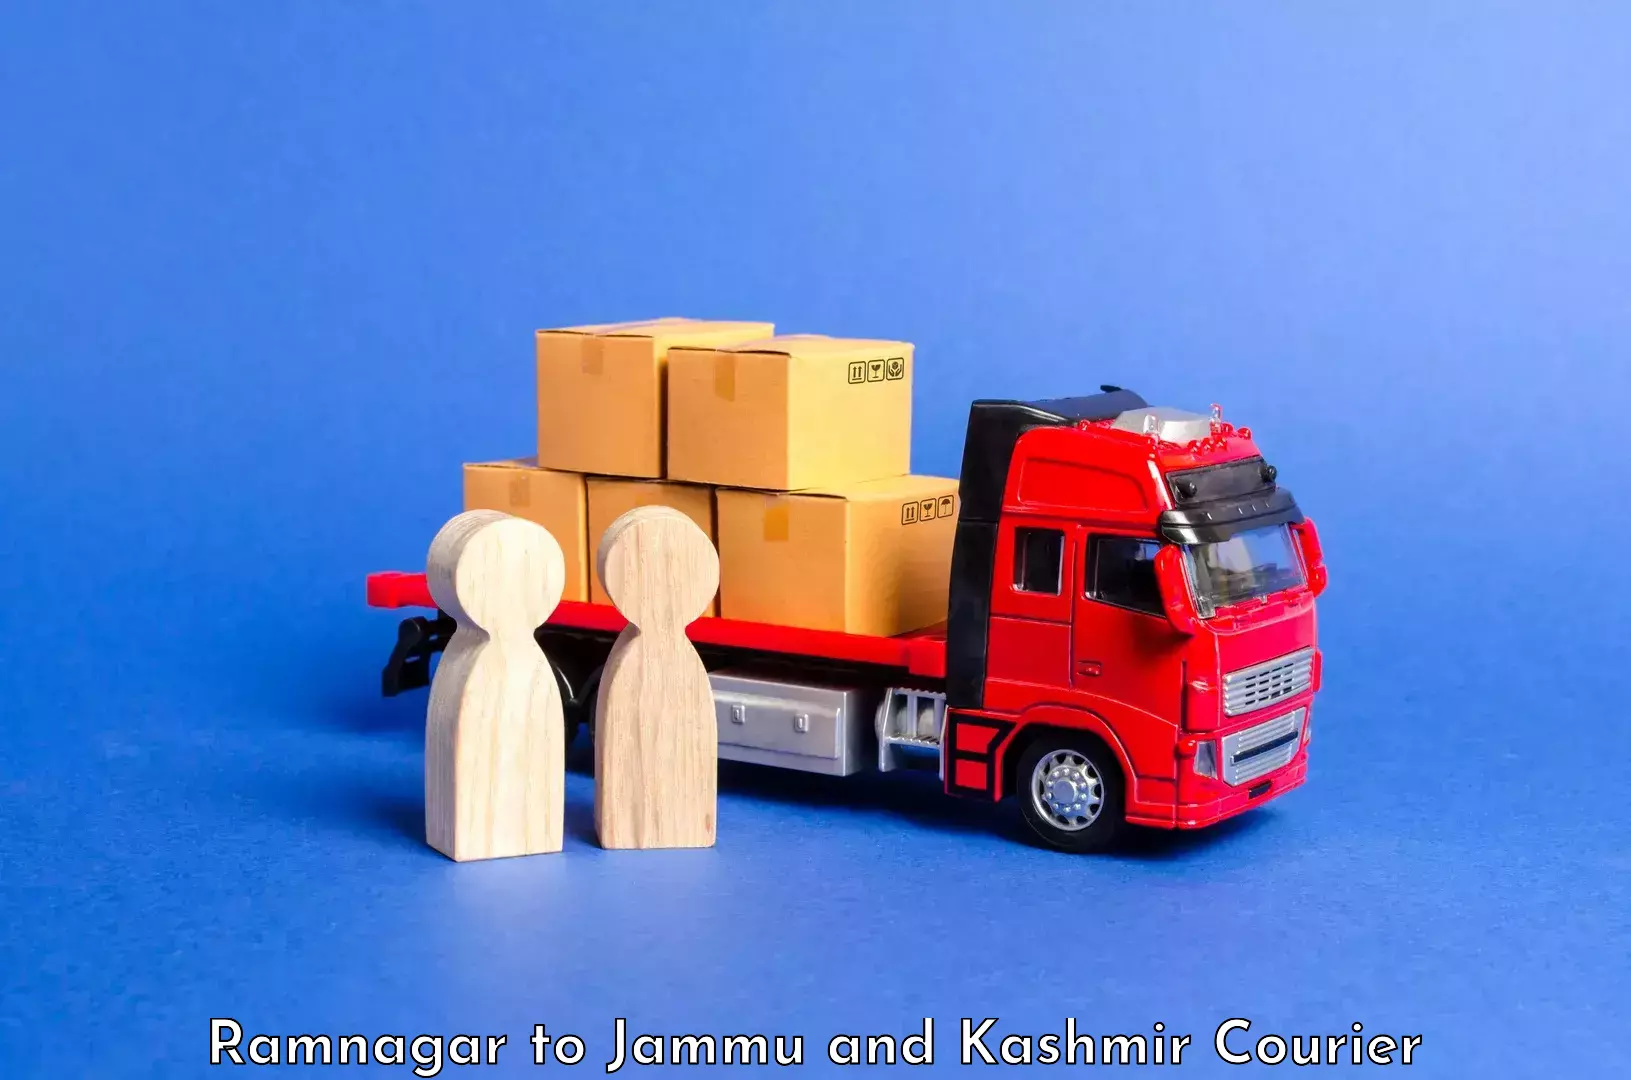 Luggage shipping specialists Ramnagar to Srinagar Kashmir